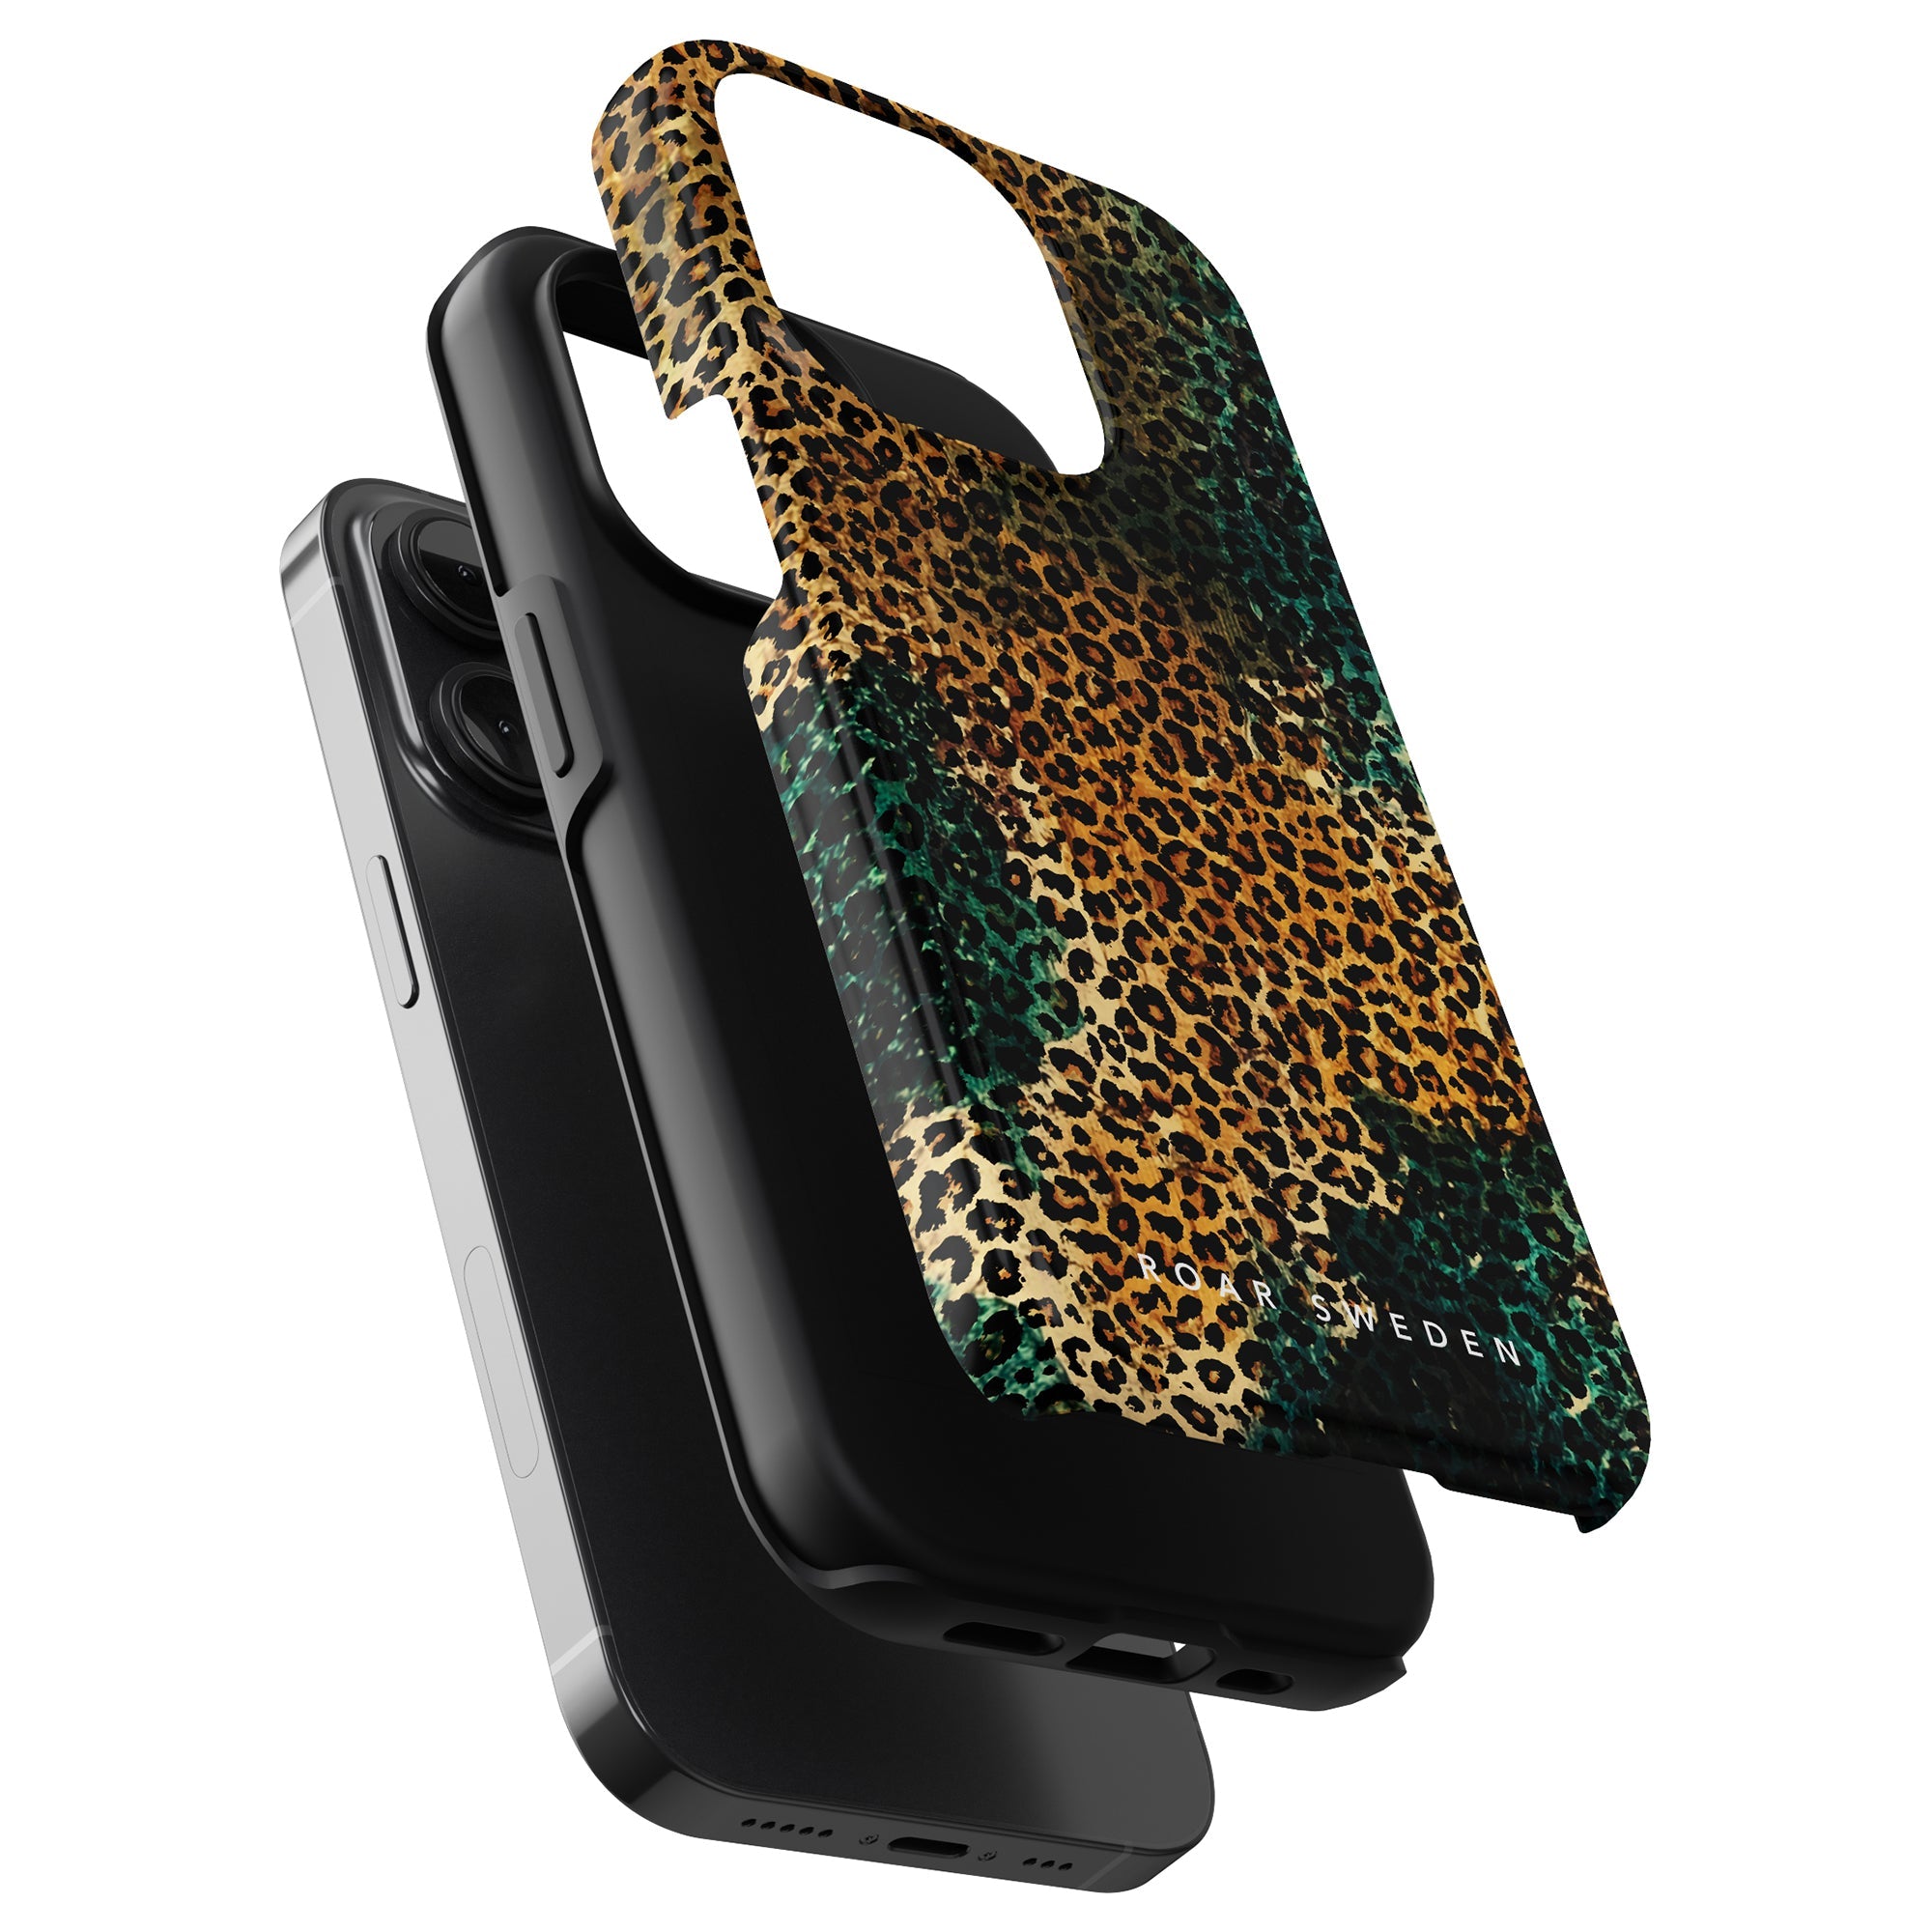 Ett Wildcat - Tufft fodral leopardmönstrat Mobilskal som ger skydd till iphone 11 pro.